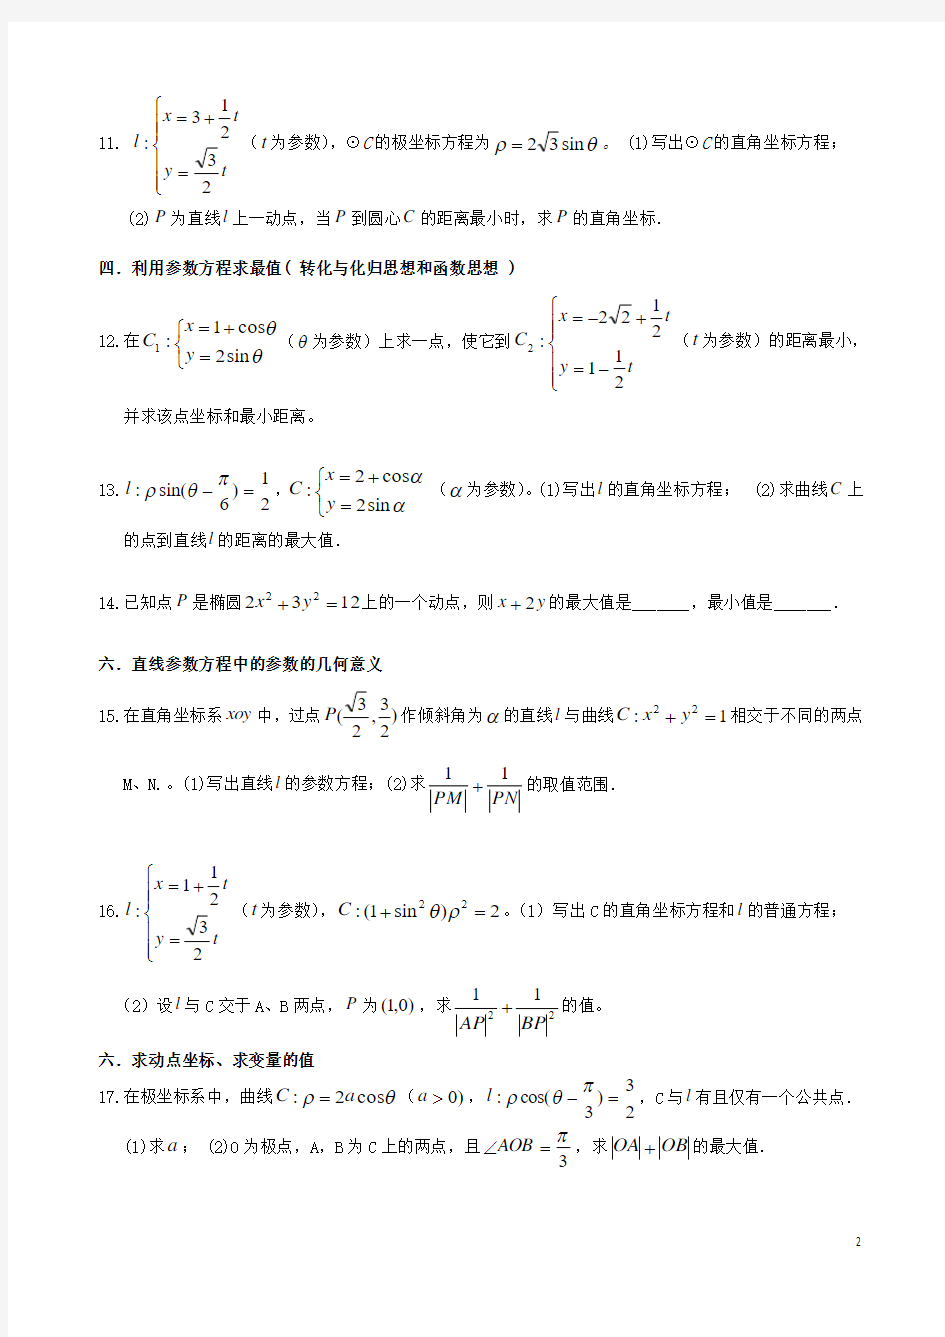 (1)极坐标参数方程题型归纳--7种